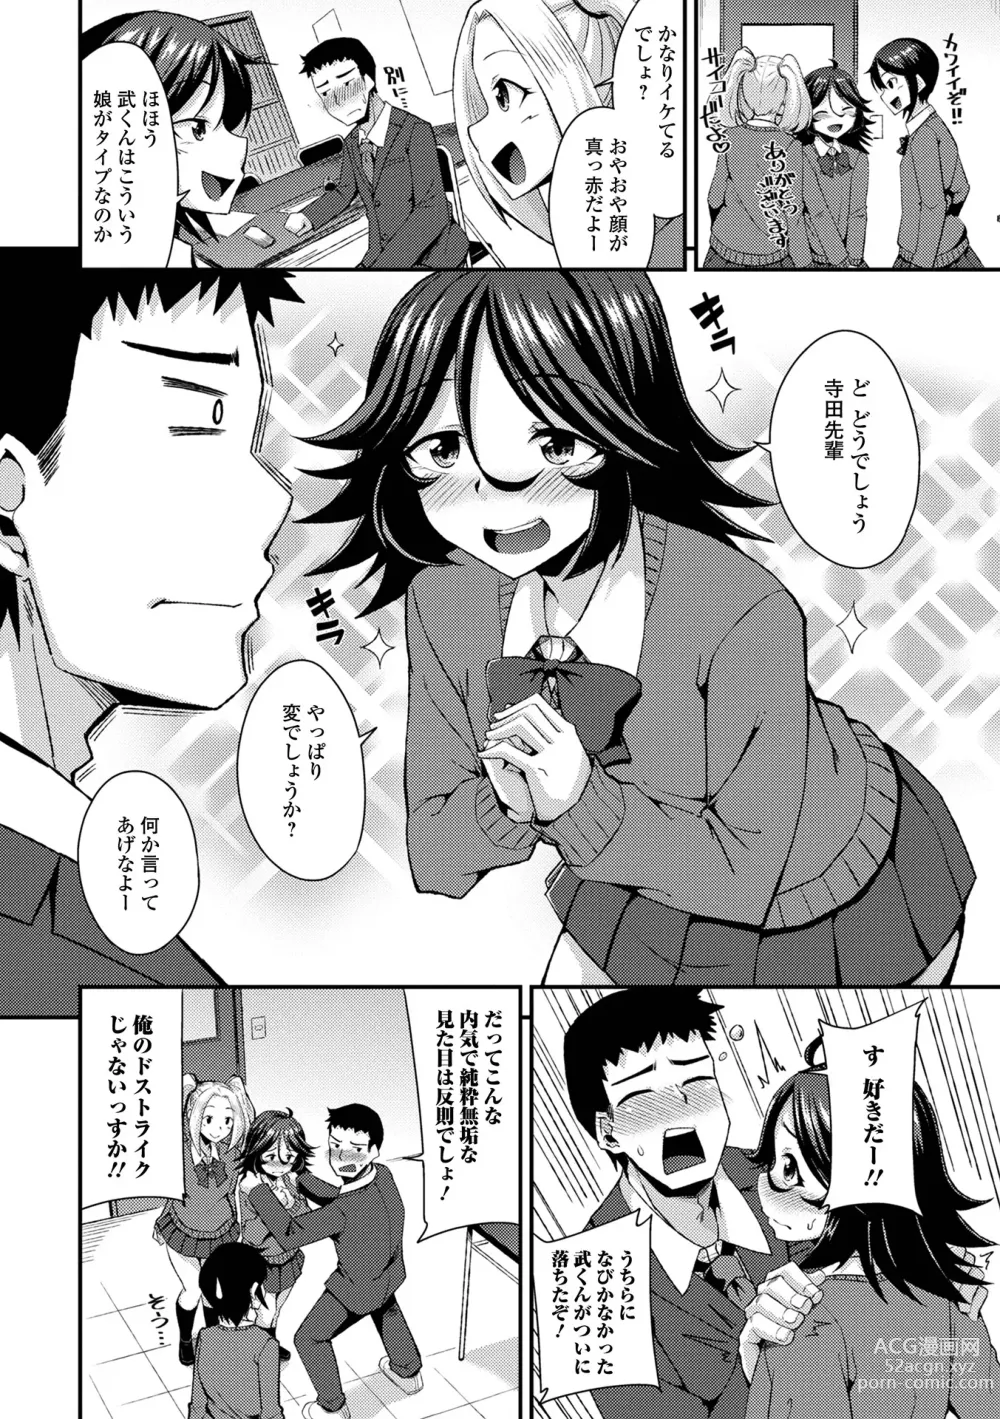 Page 8 of manga Gekkan Web Otoko no Ko-llection! S Vol. 94